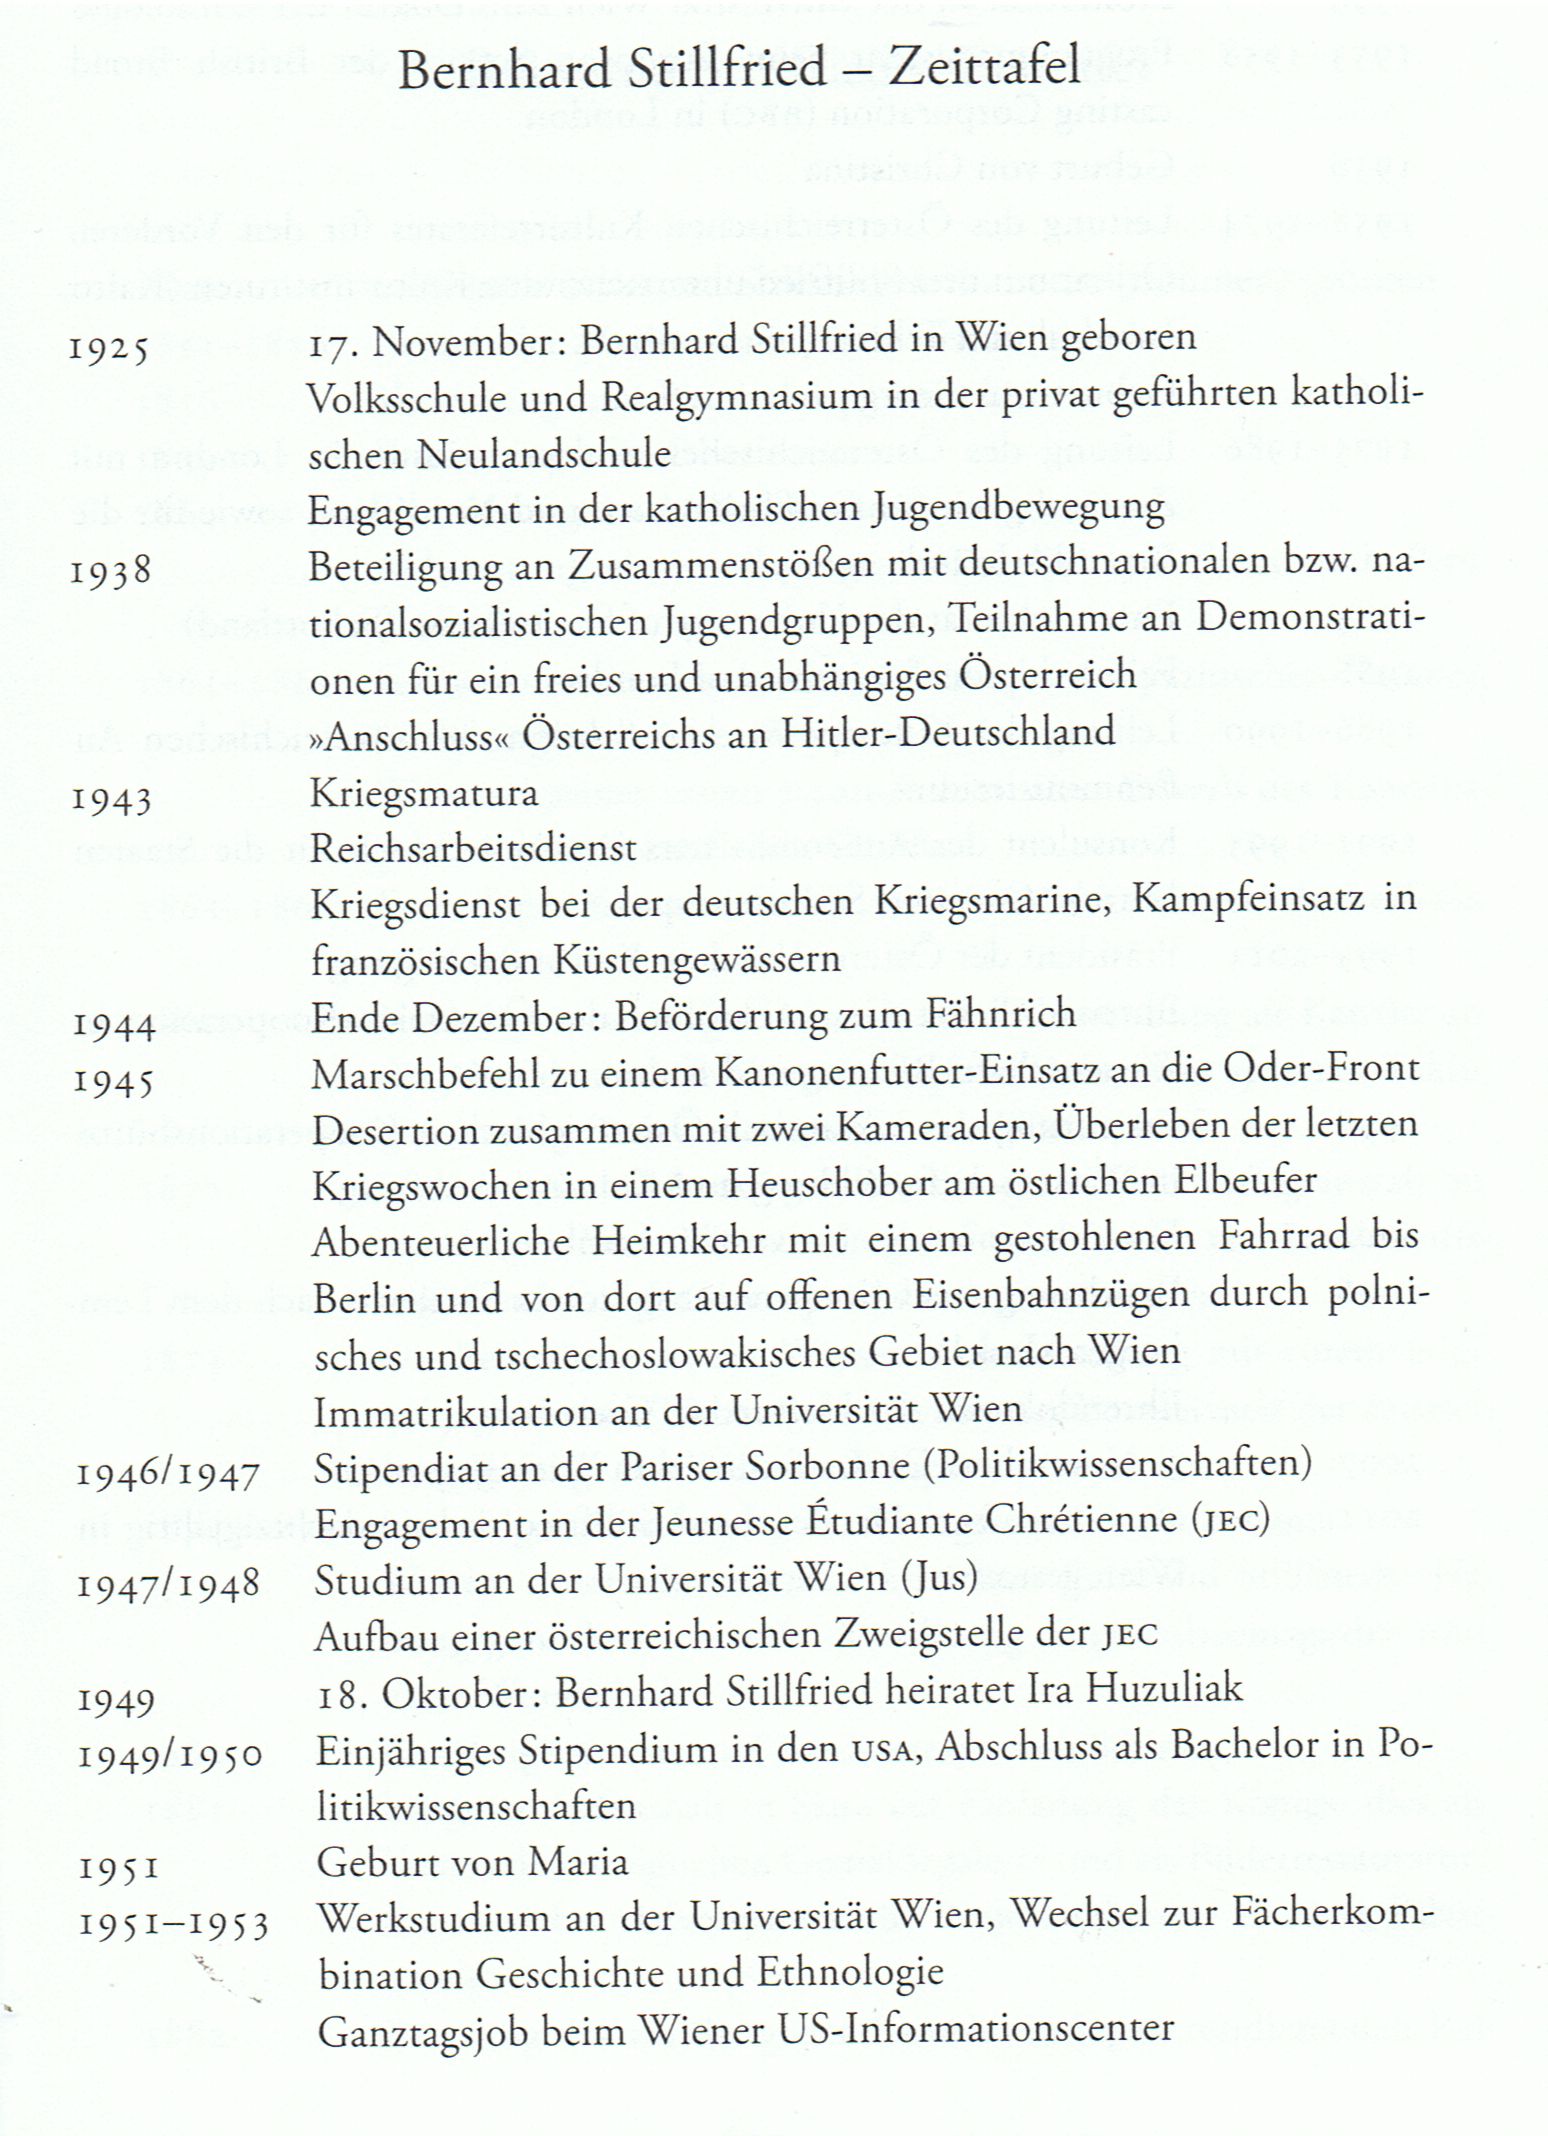 Zeittafel Bernhard 1